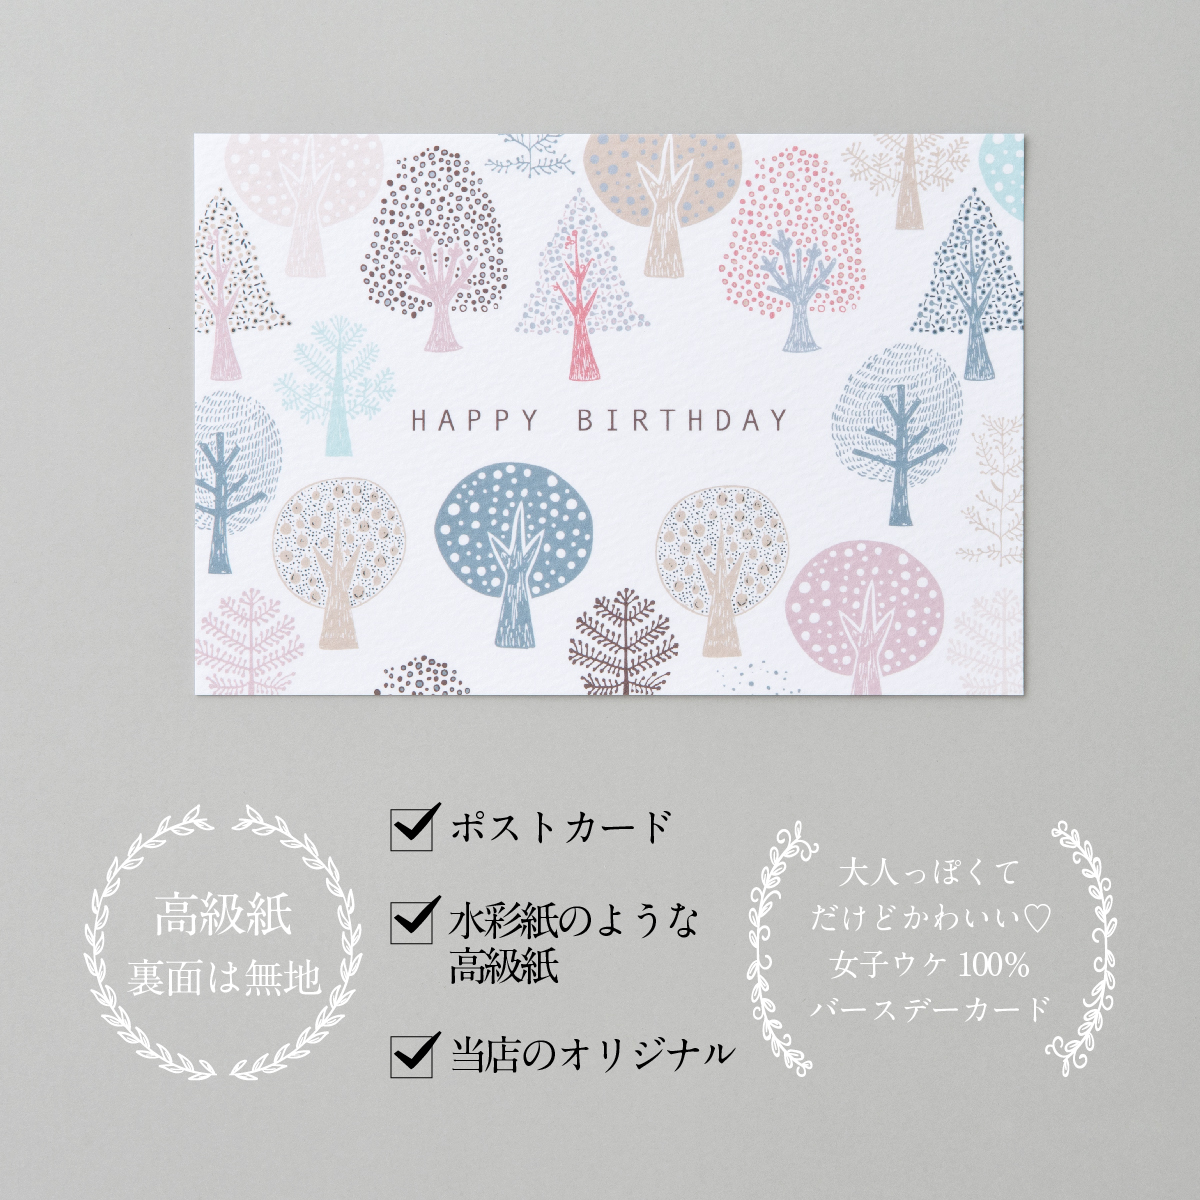 可愛いイラストのバースデーカード 可愛いデザインが人気です バースデーカード 森ピンク Birthday Card グリーティングカード メッセージ カード メーカー再生品 感謝 かわいい おしゃれ ギフト 誕生日カード プレゼント